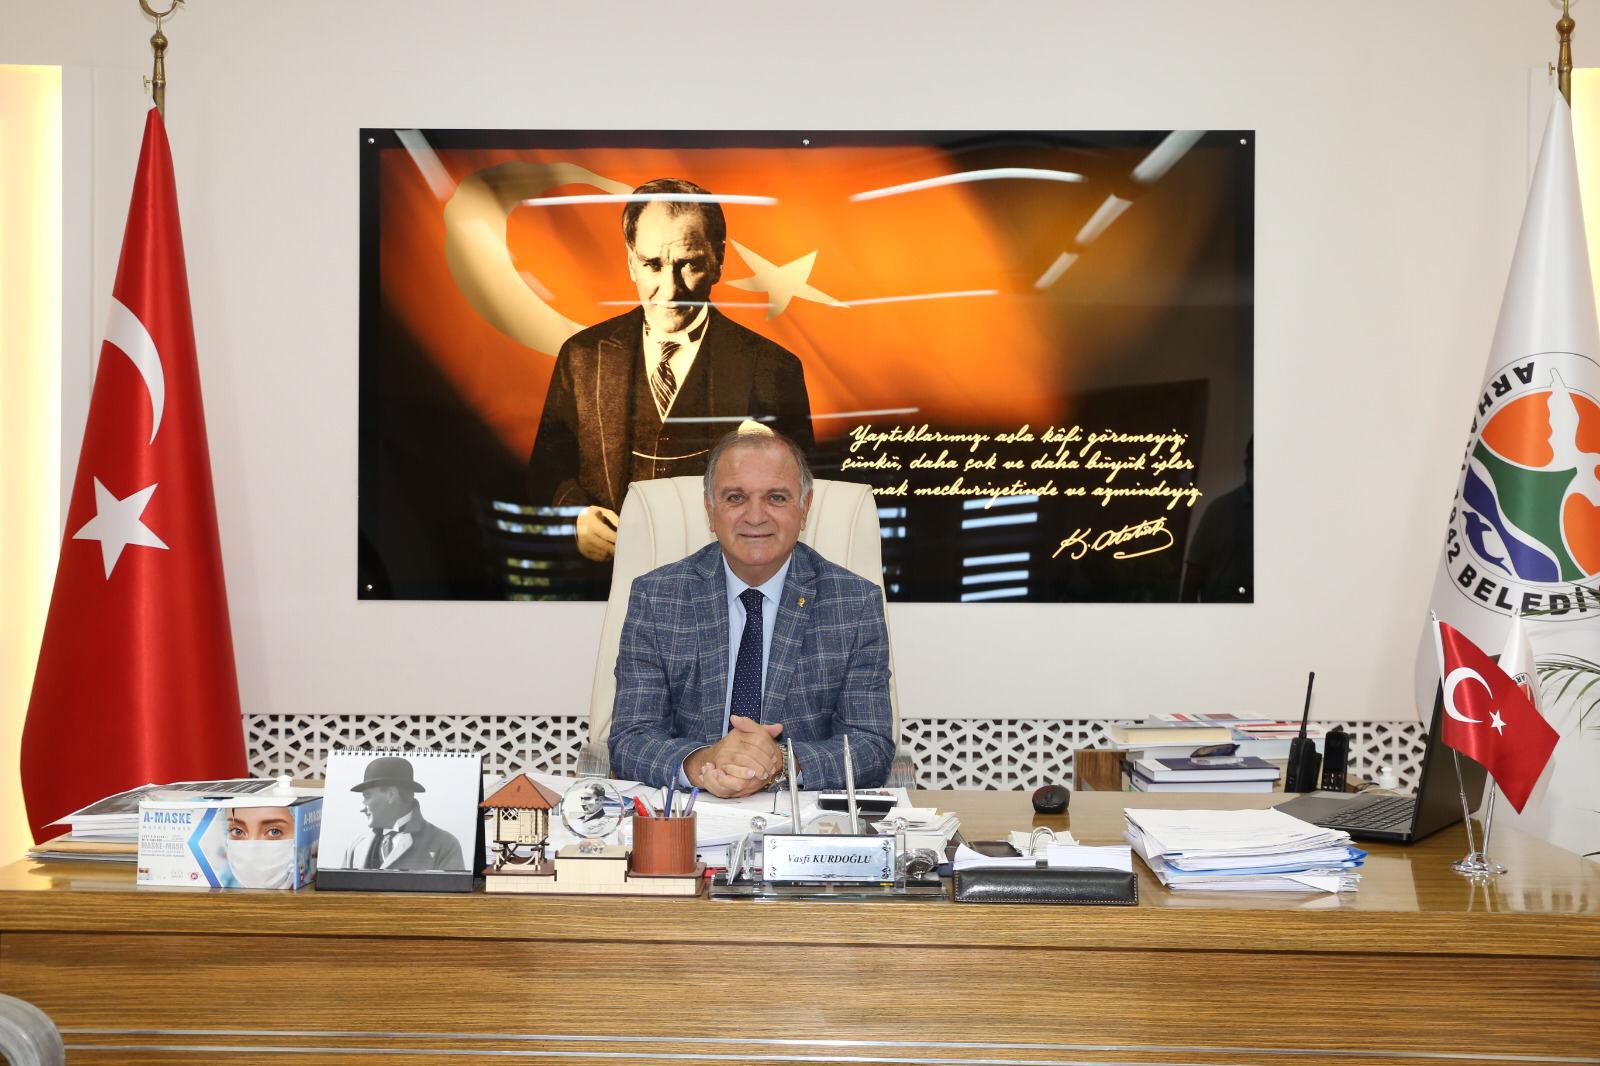 Arhavi Belediye Başkanı Vasfi Kurdoğlu’ndan Kadir Gecesi Mesajı